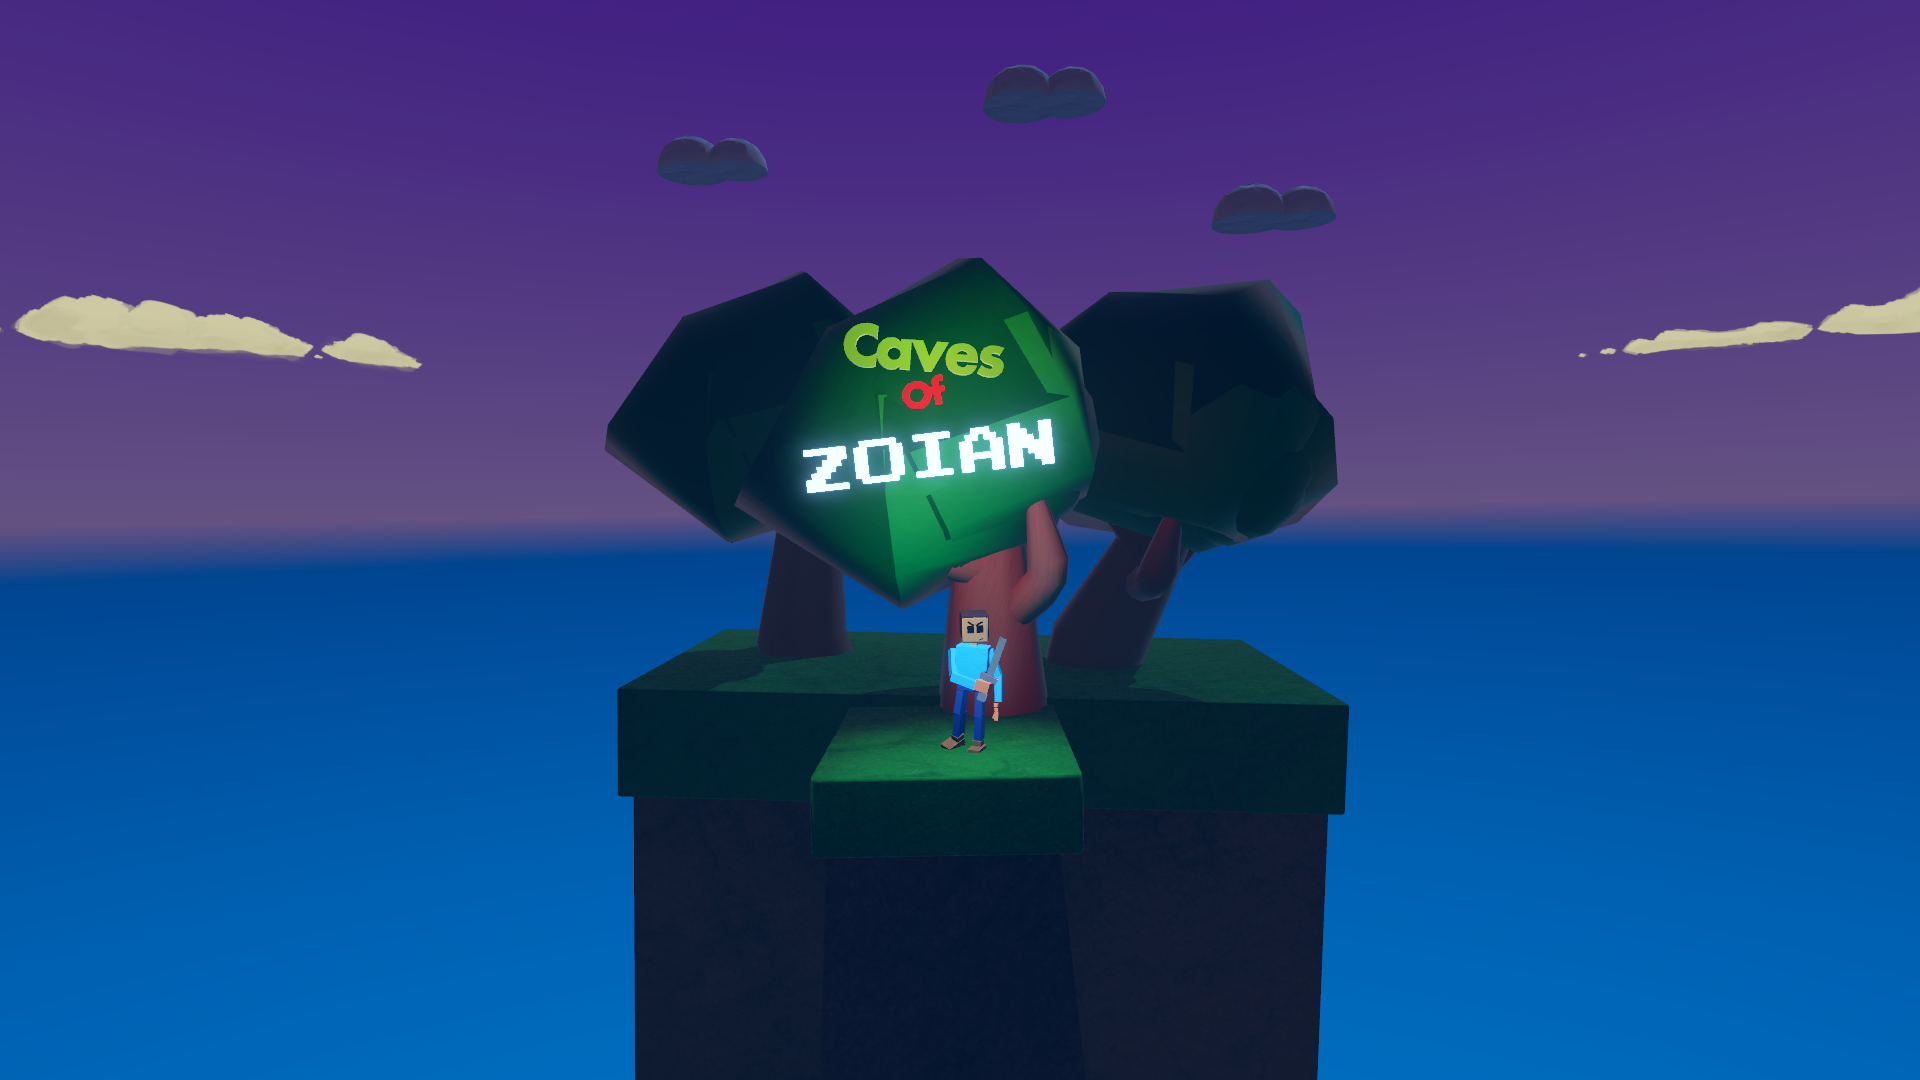 Caves Of Zoian